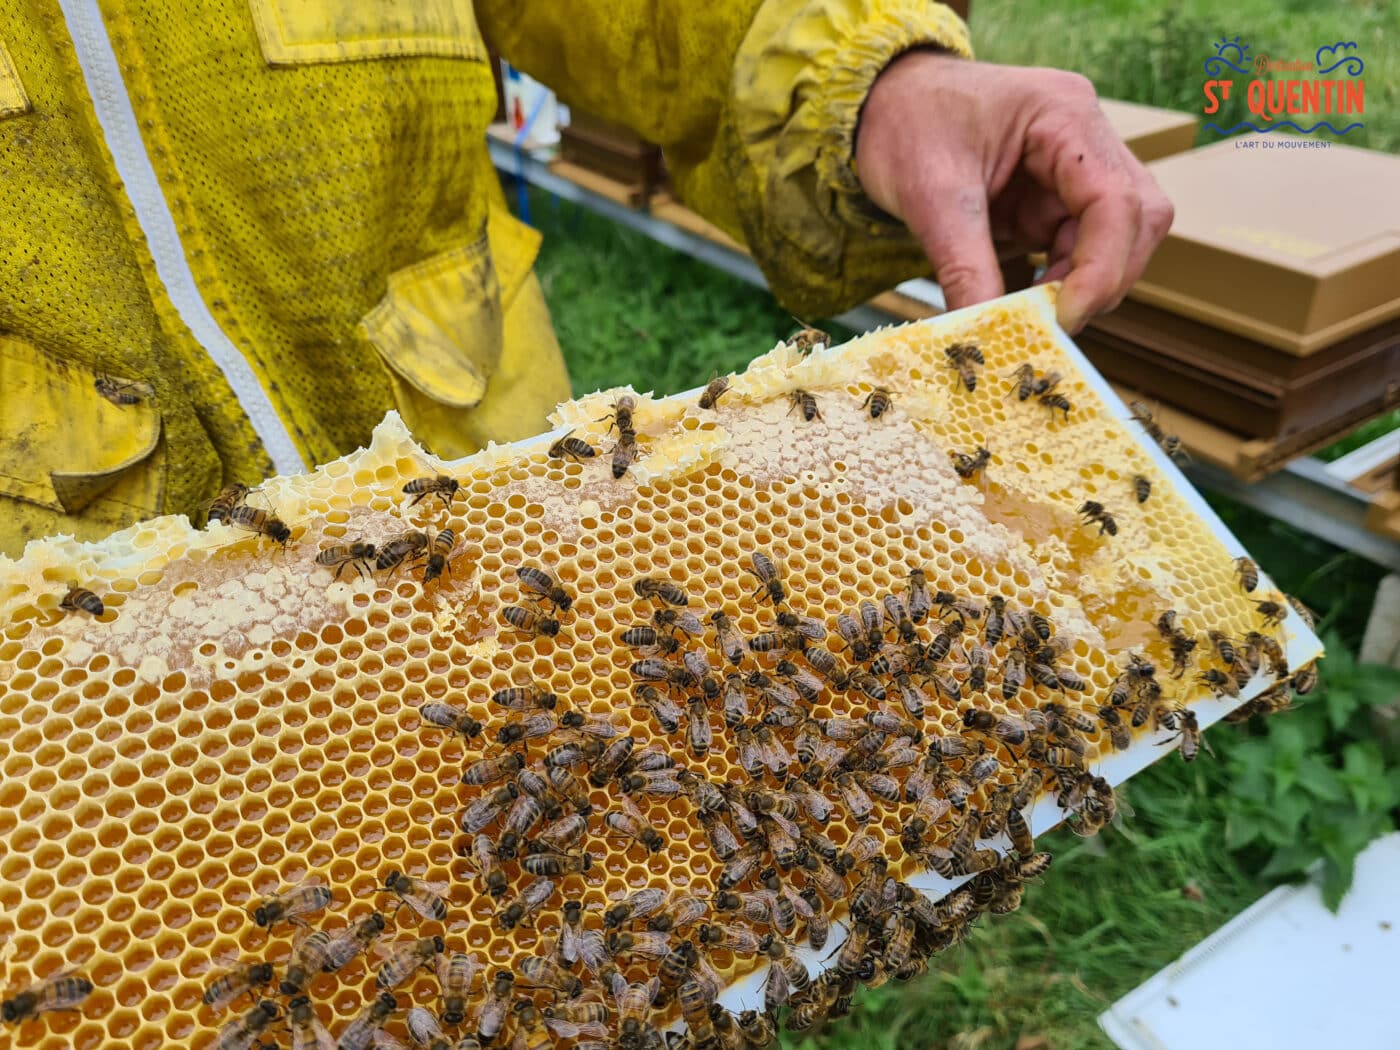 ambassadeur les abeilles de francilly 20 - Office de tourisme du Saint-Quentinois